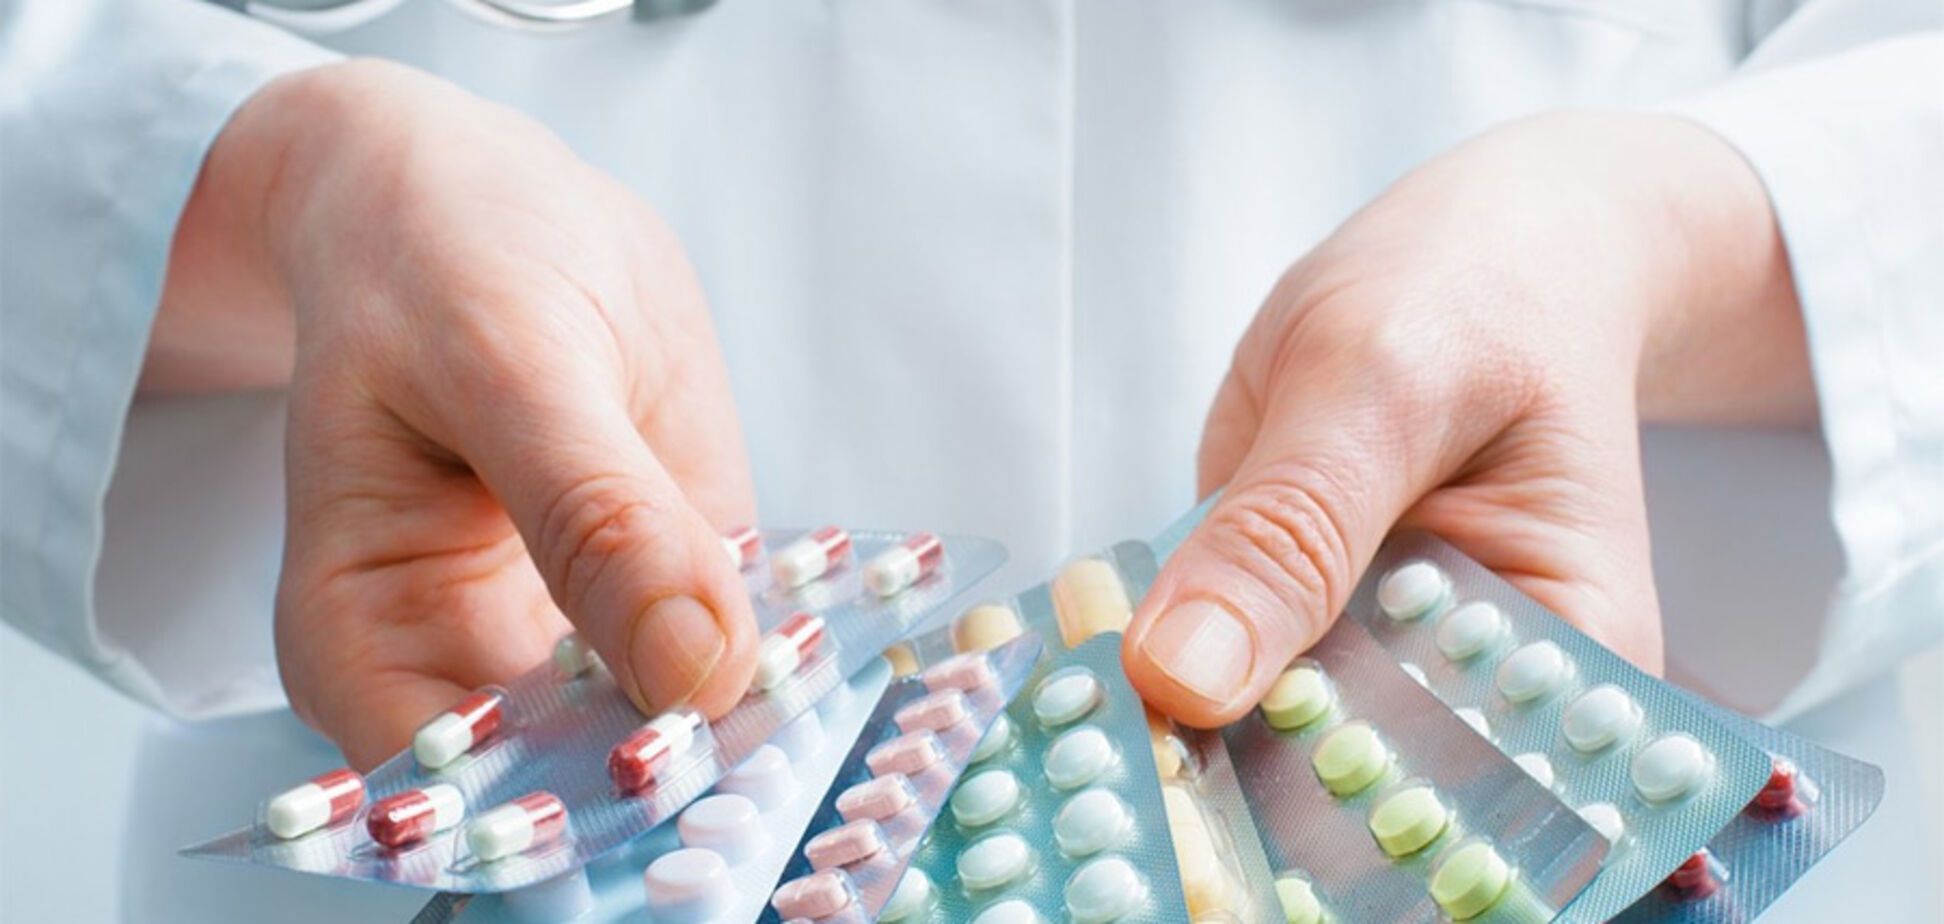 Безкоштовні ліки: де, як і які медикаменти роздають аптеки